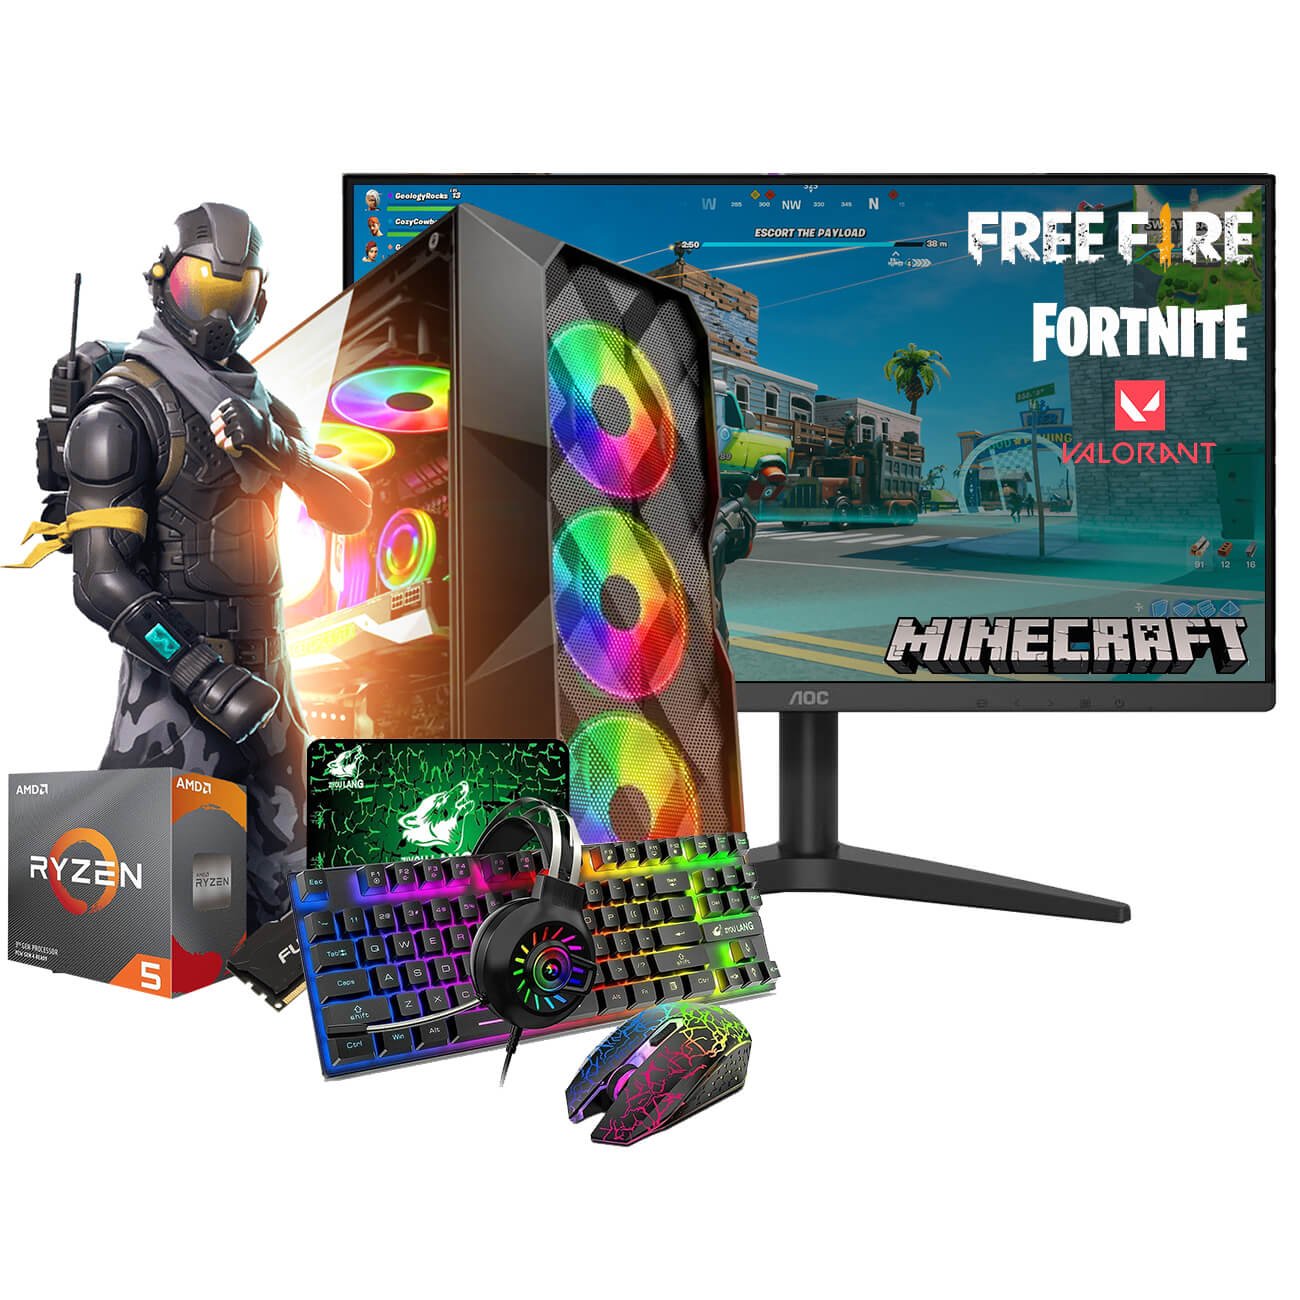 Free PC Gaming Tech